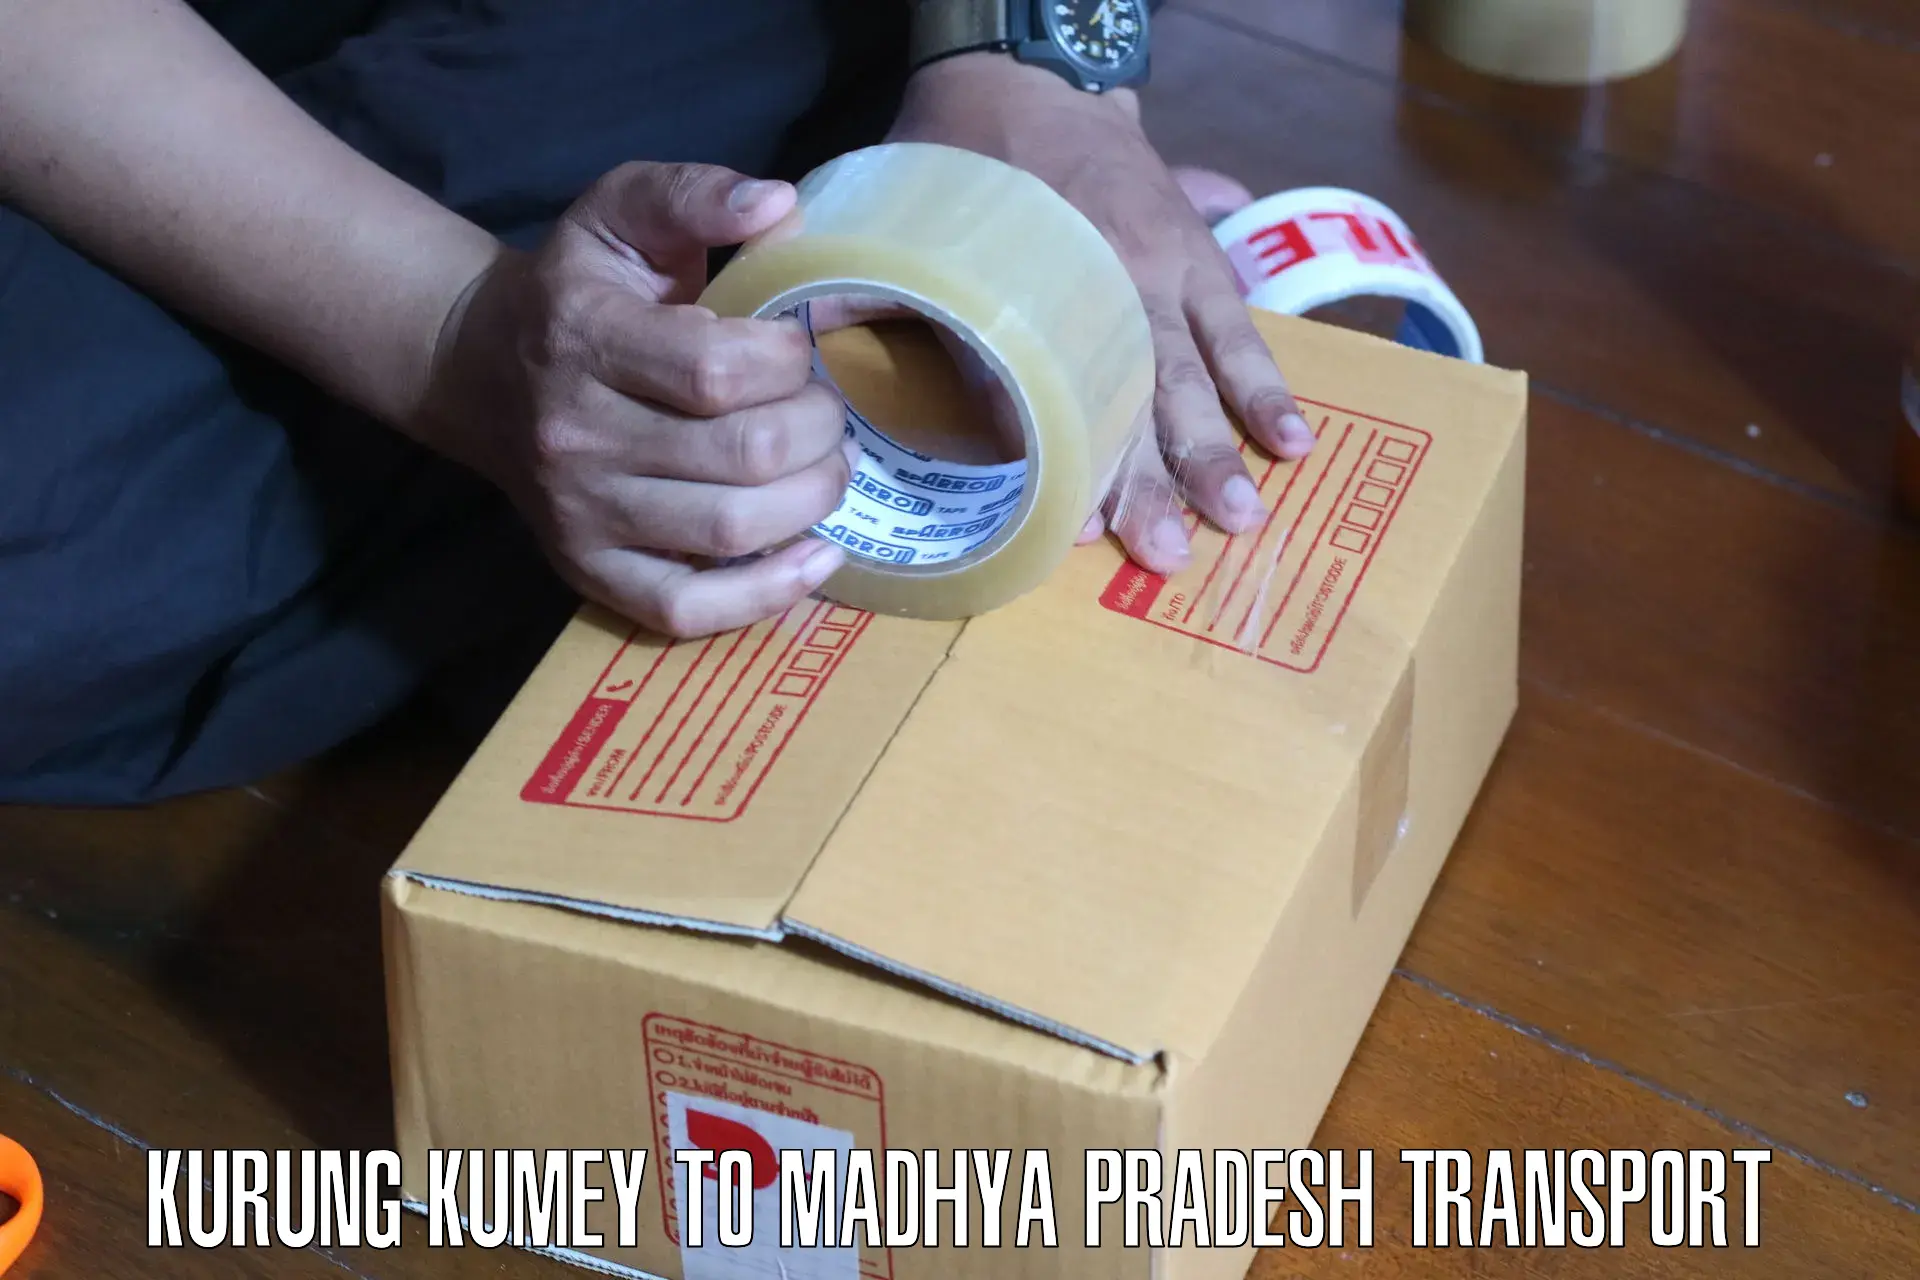 Nationwide transport services Kurung Kumey to Sohagi